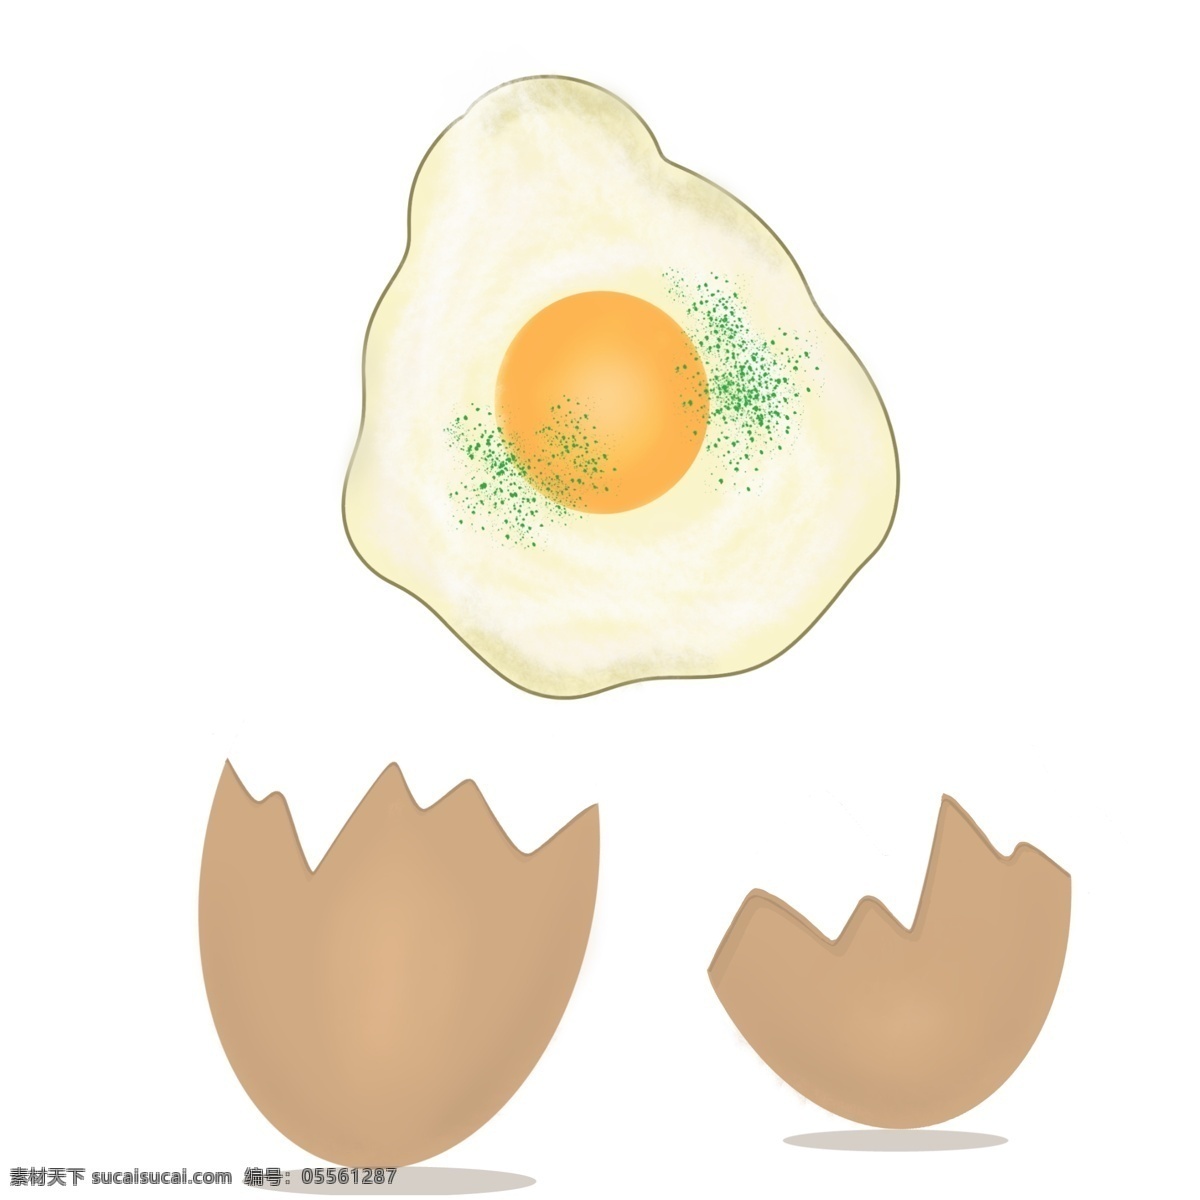 破壳 而出 小 煎蛋 蛋壳 鸡蛋 煎鸡蛋